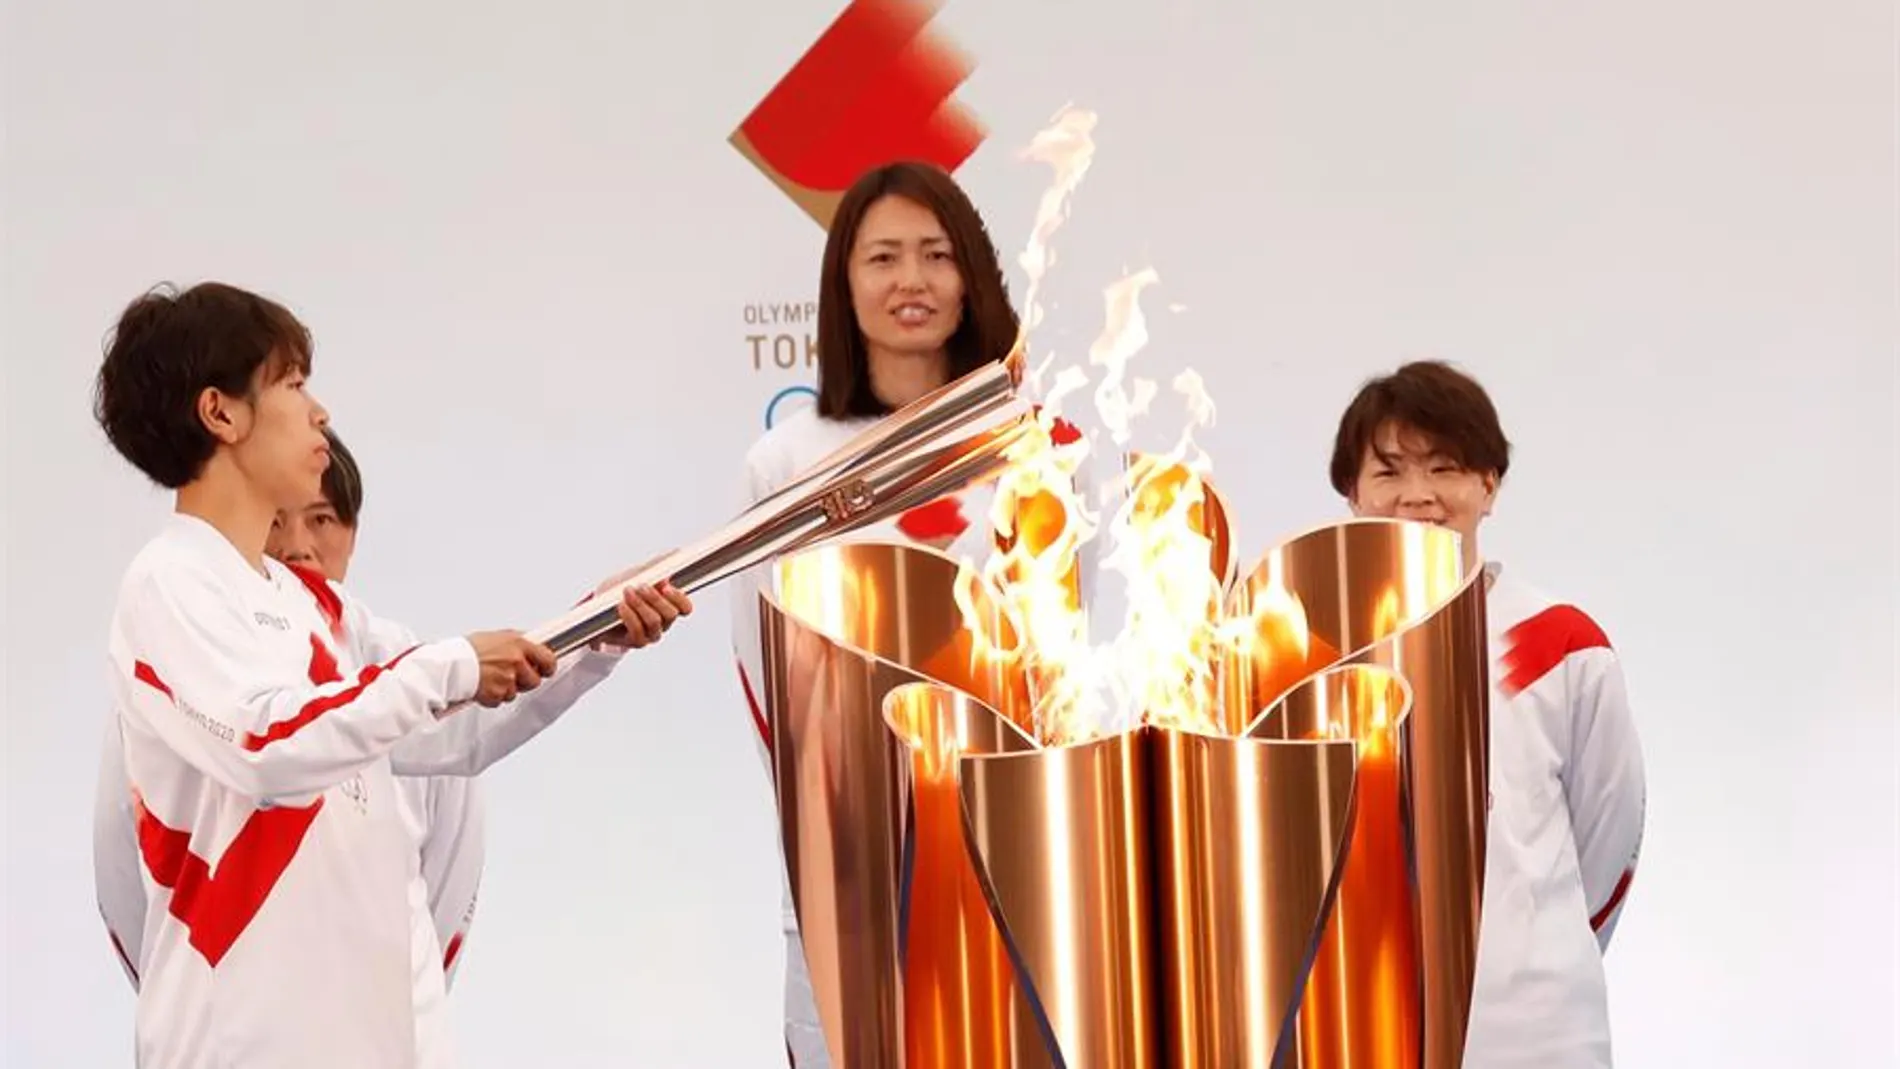 La antorcha de los Juegos Olímpicos de Tokio 2020 arranca su recorrido en Fukushima con un 'relevo burbuja'